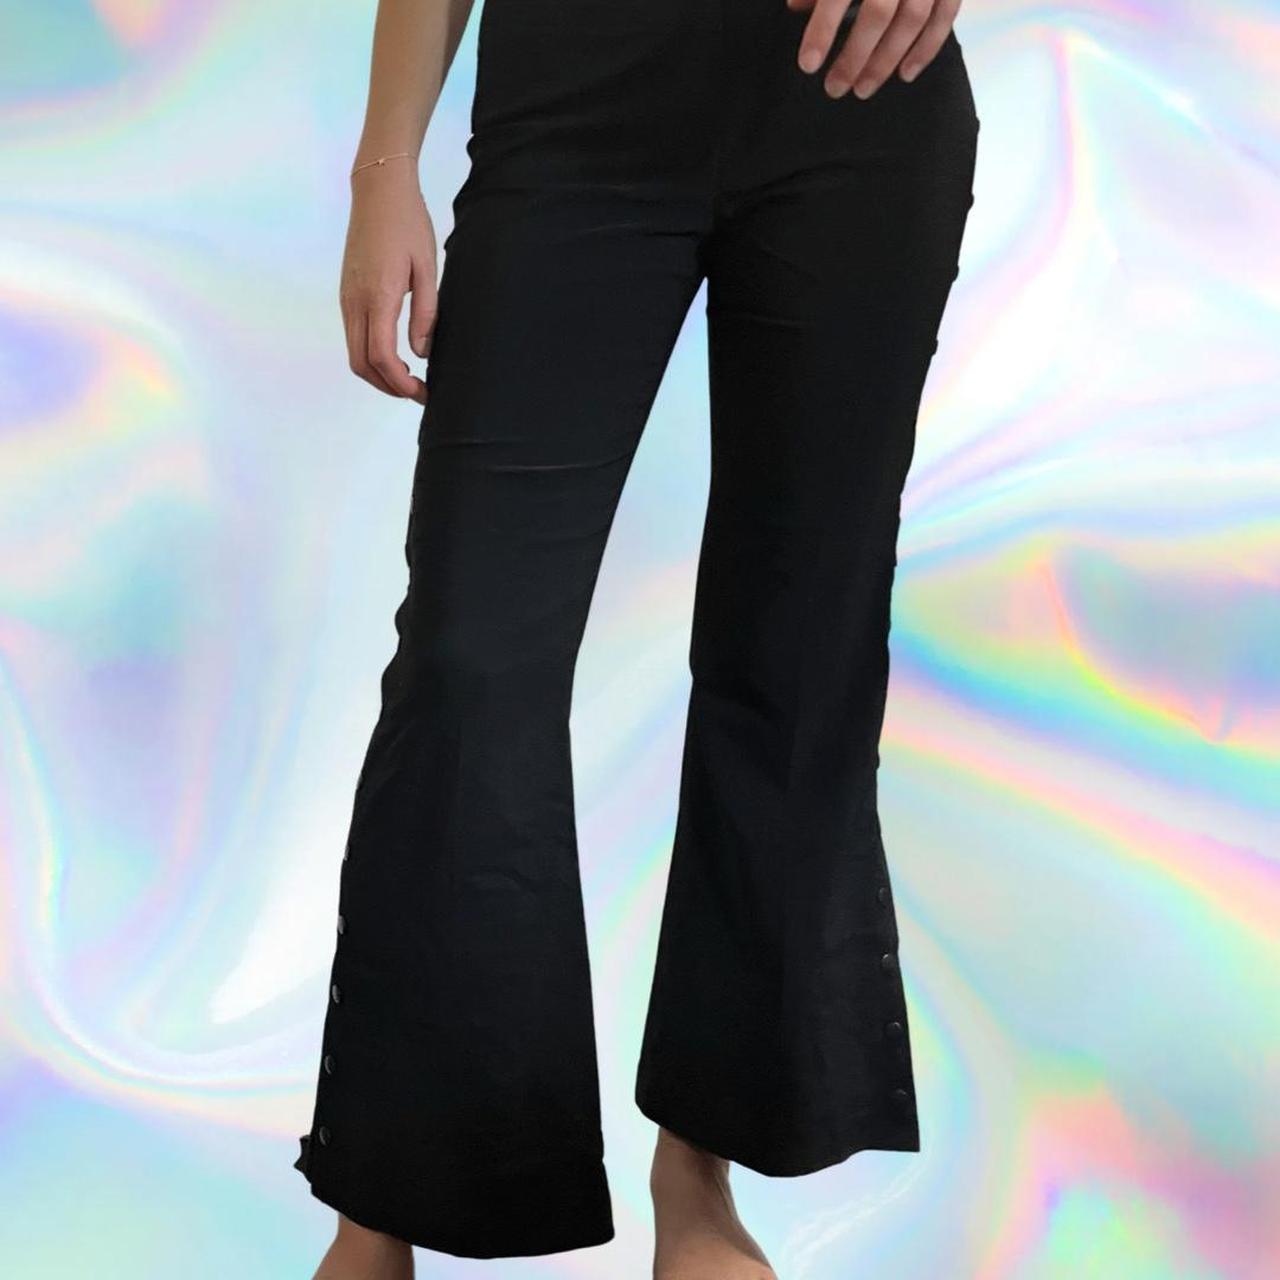 vintage y2k black flare pants! zip in the back, - Depop